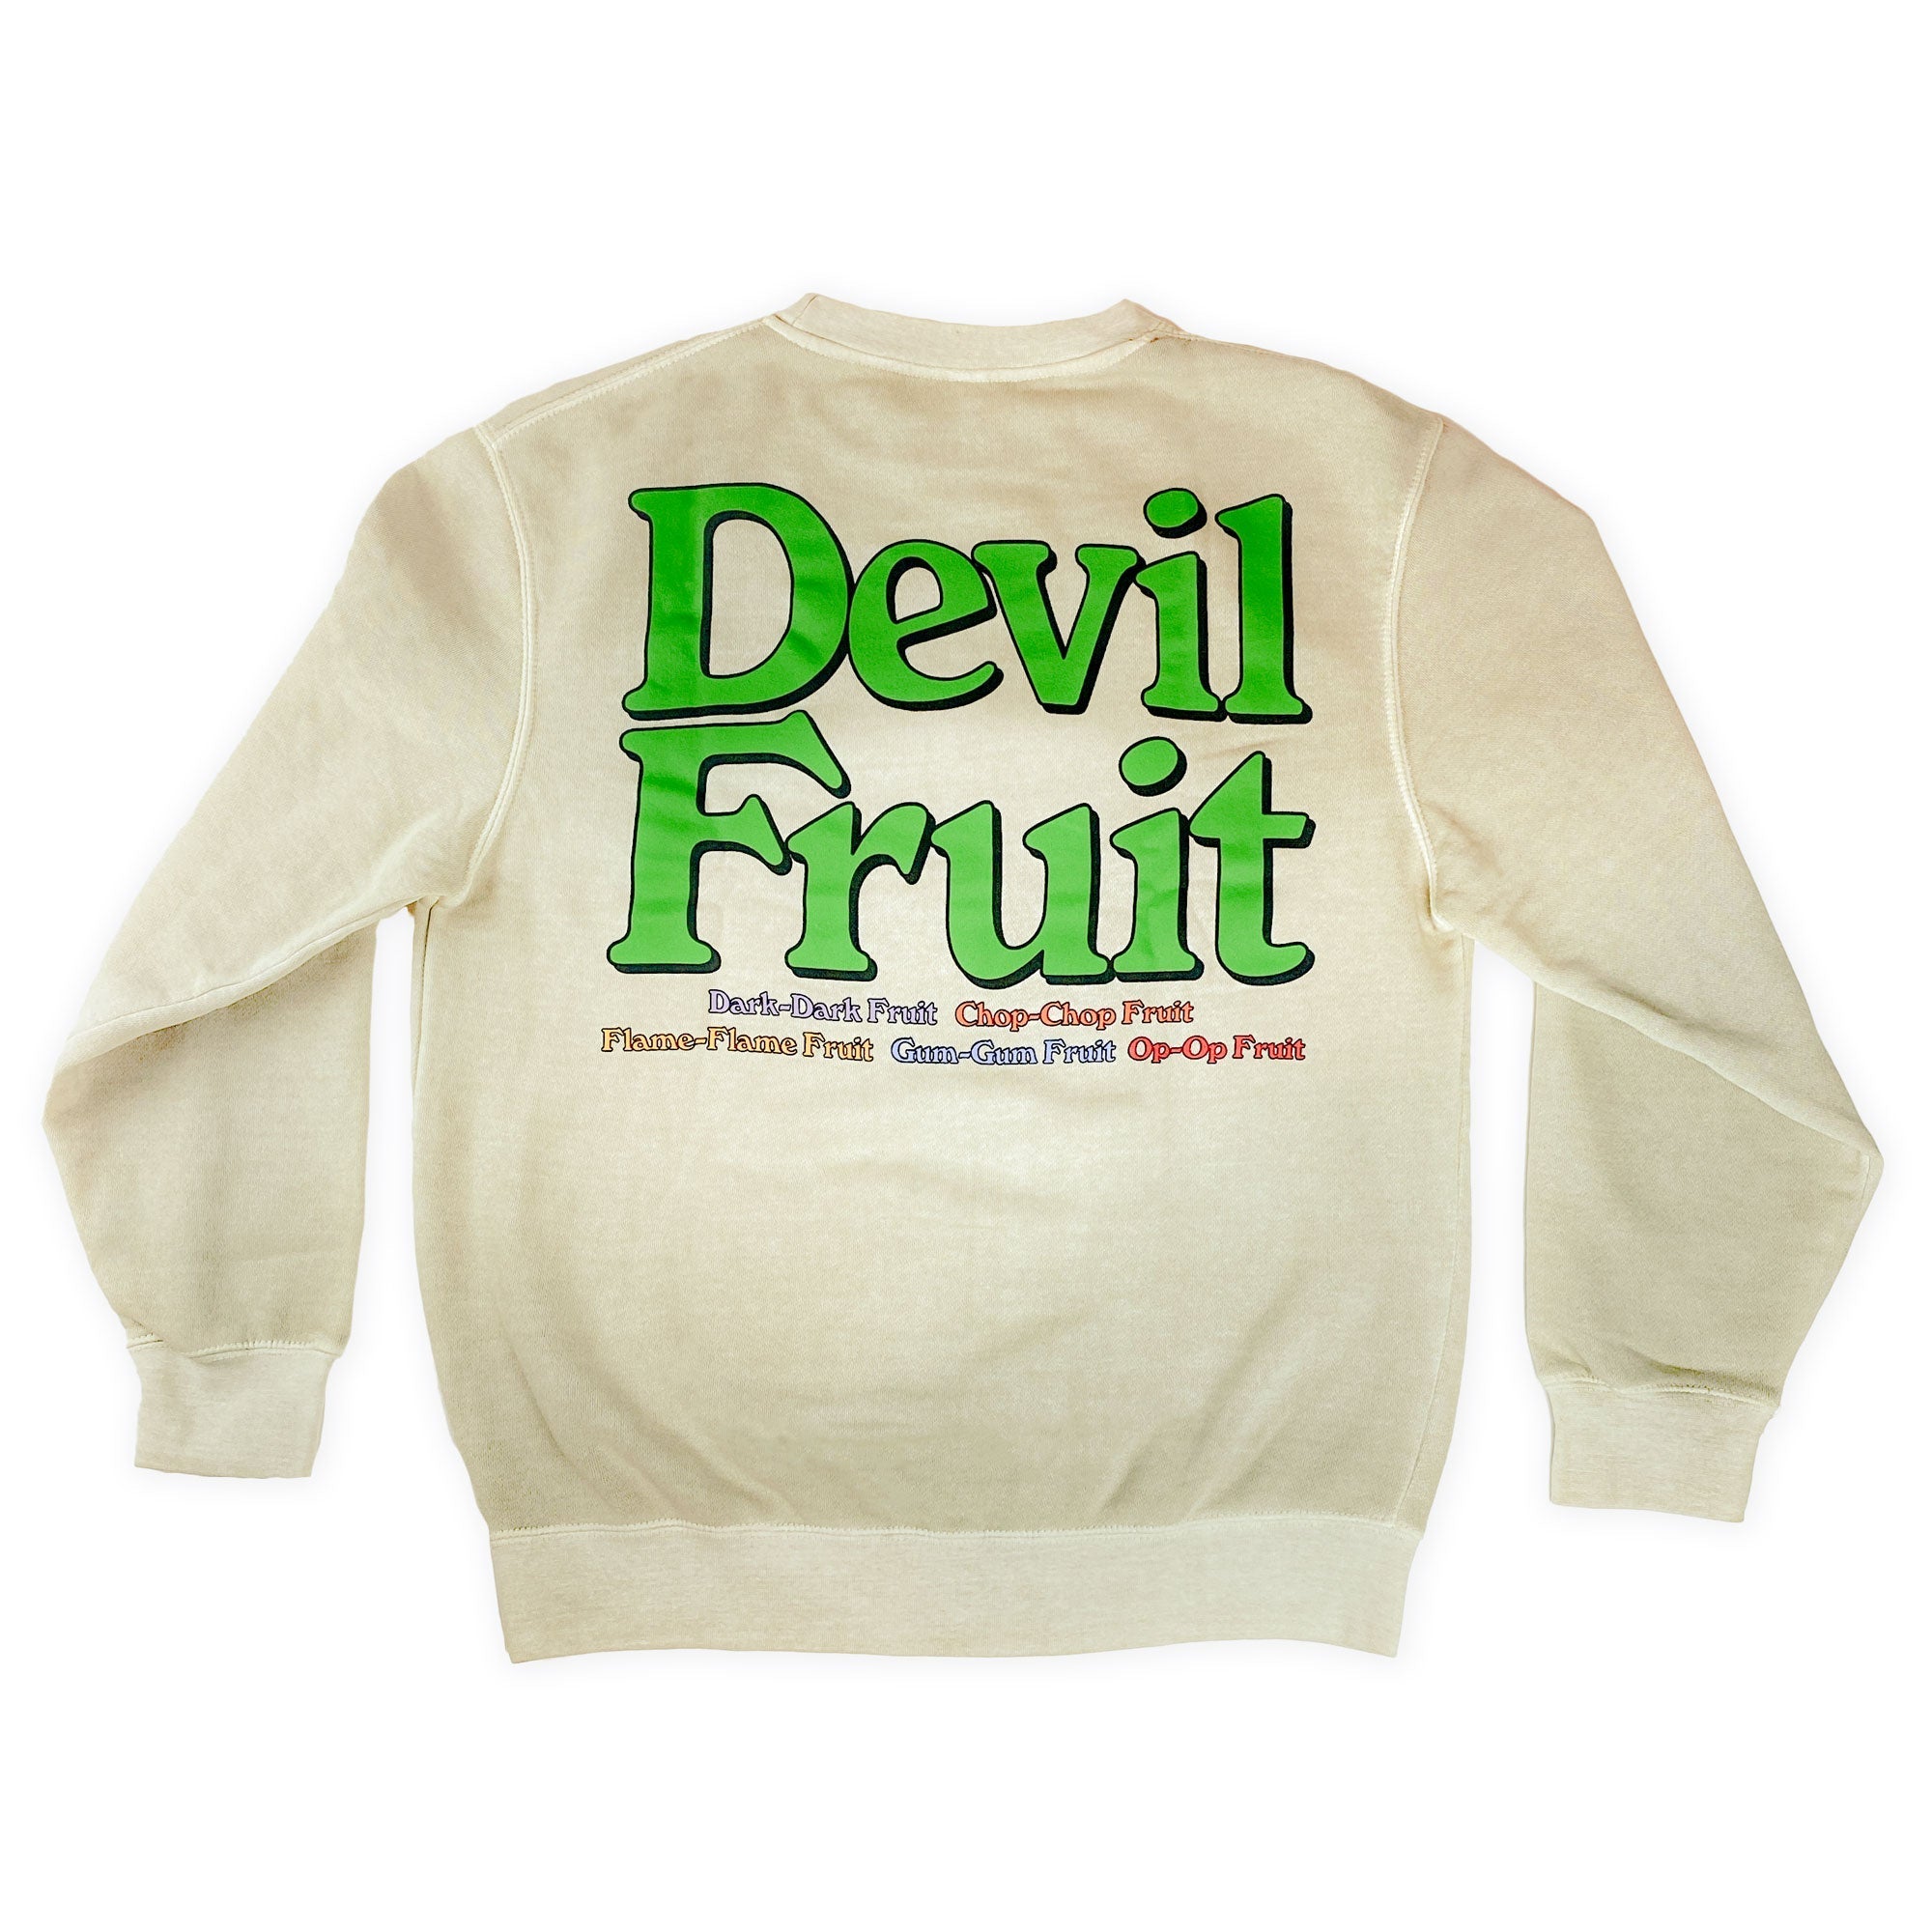 One Piece - Devil Fruit Crew Sweatshirt - Crunchyroll Exclusive! image count 1